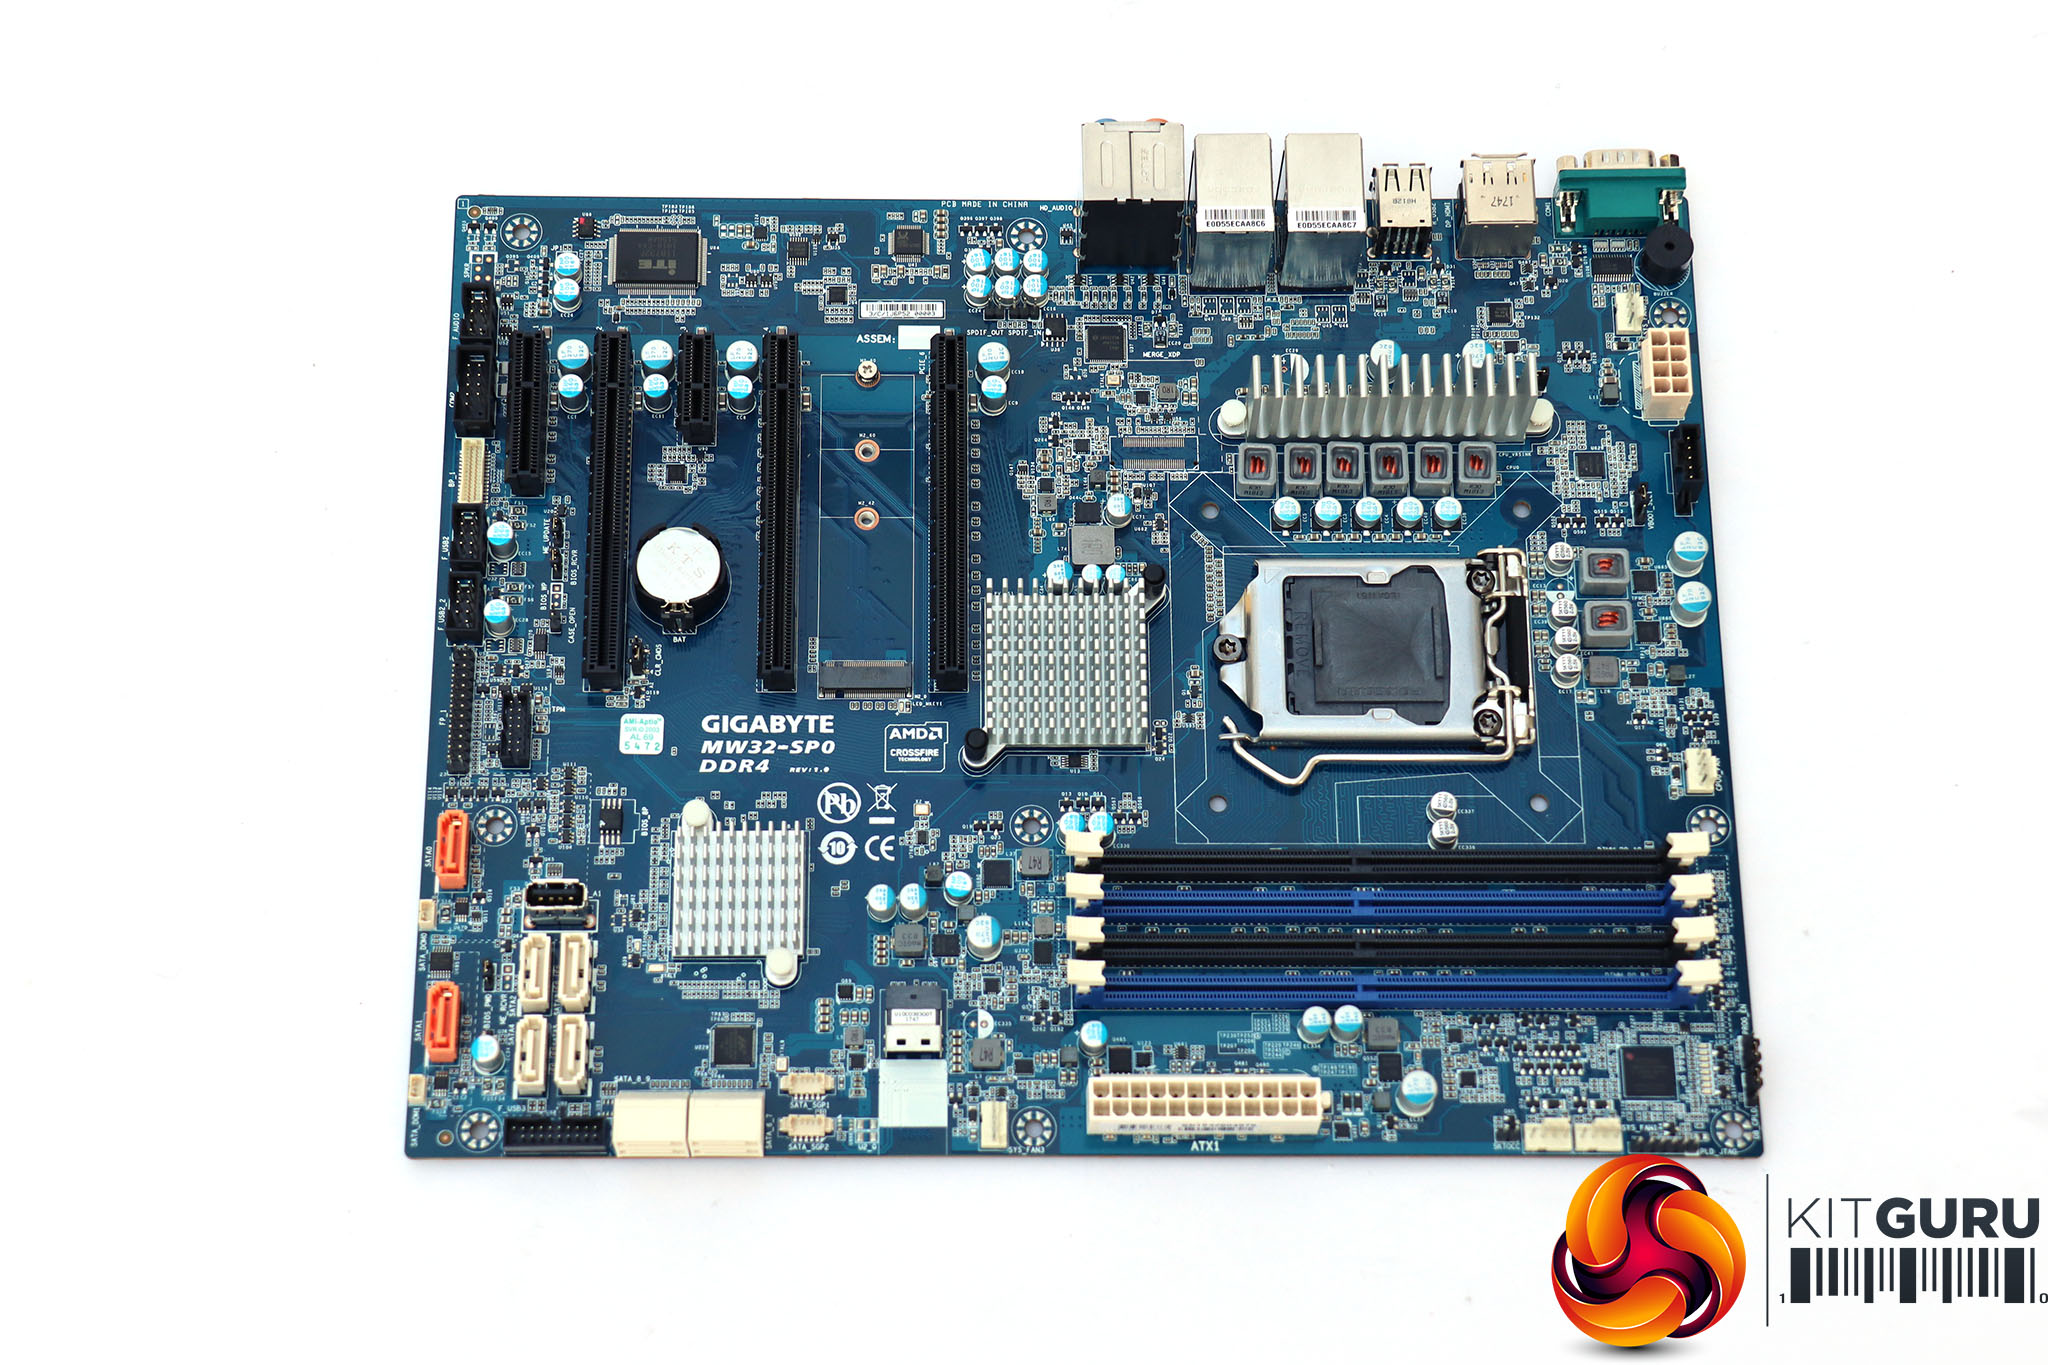 Knop Egnet Byen Gigabyte MW32-SP0 Intel Xeon Motherboard Review | KitGuru